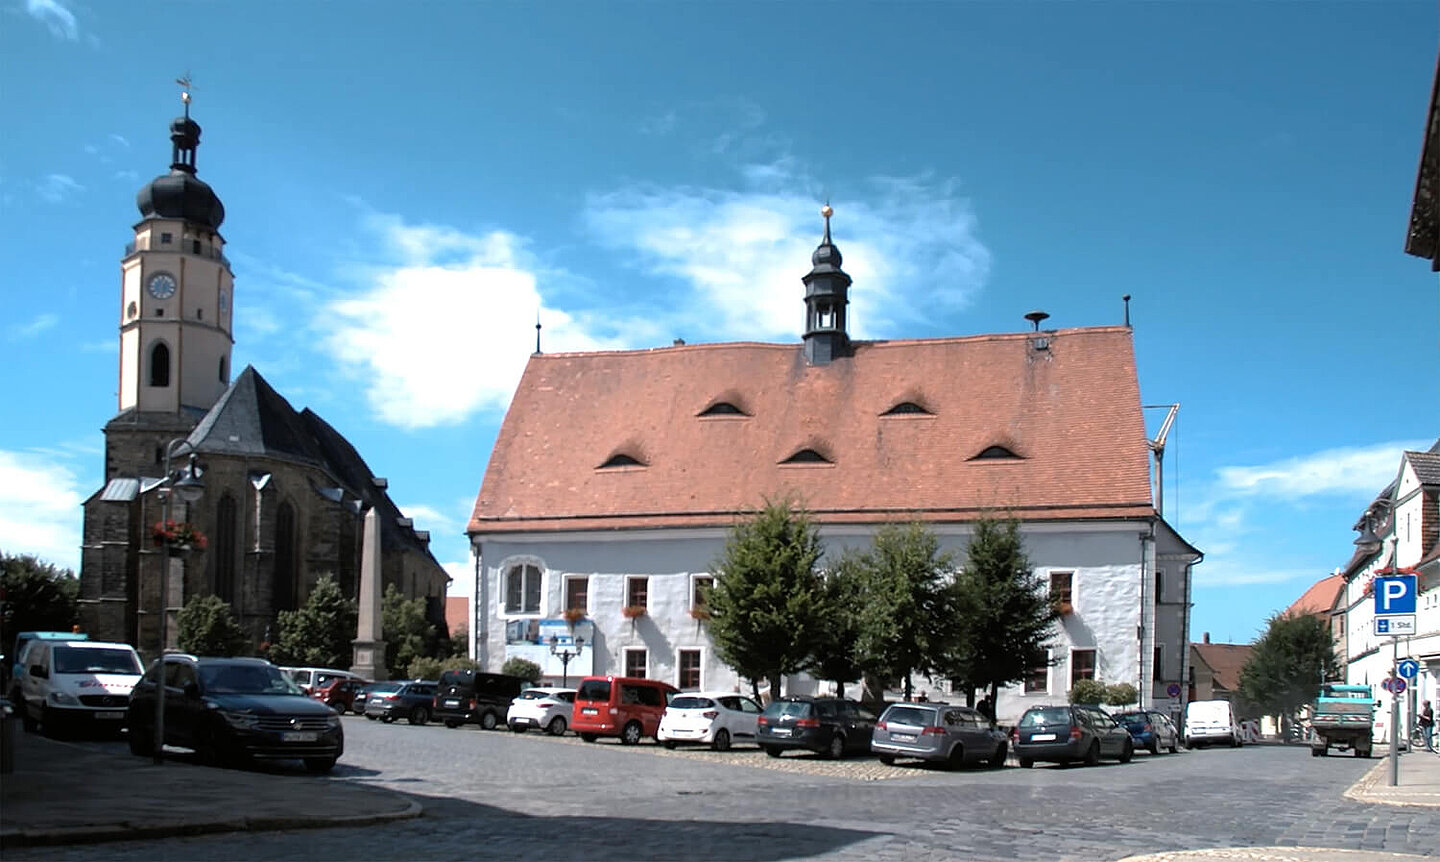 Buttstädter Rathaus und Kirche